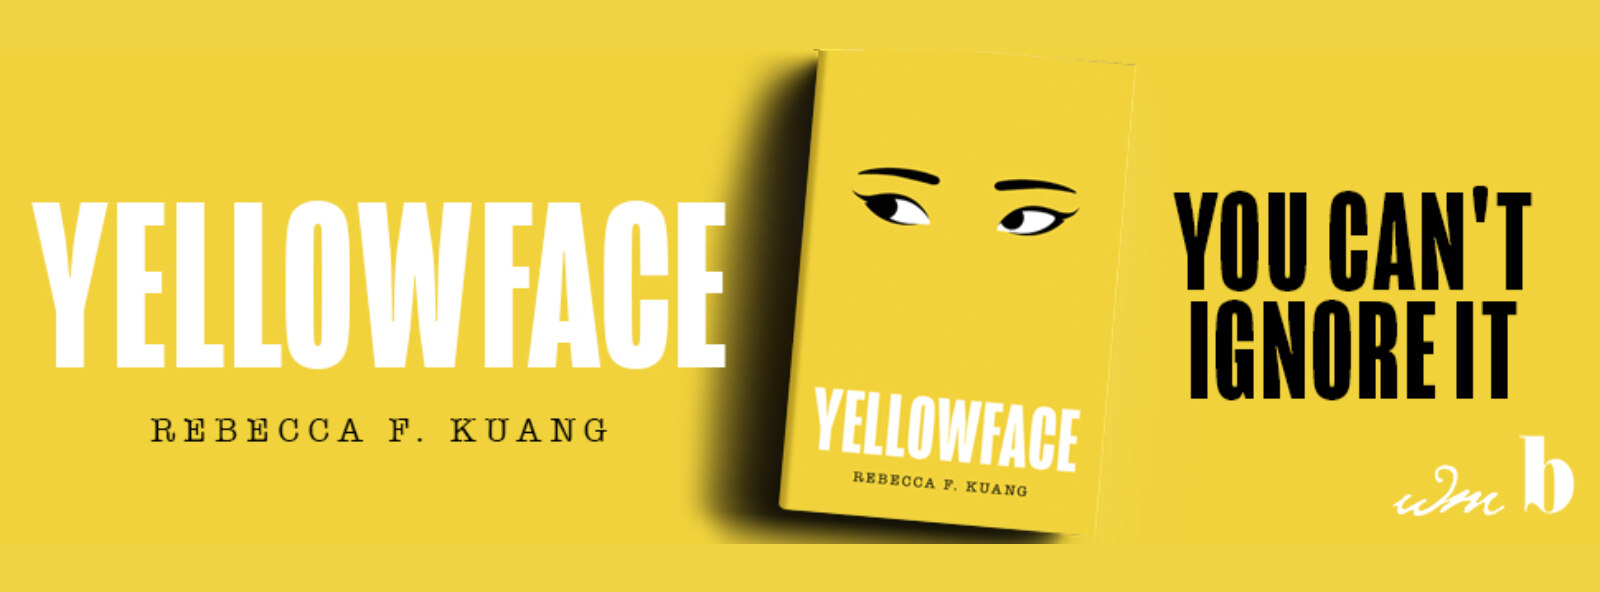 yellowface-rebecca-f-kuang